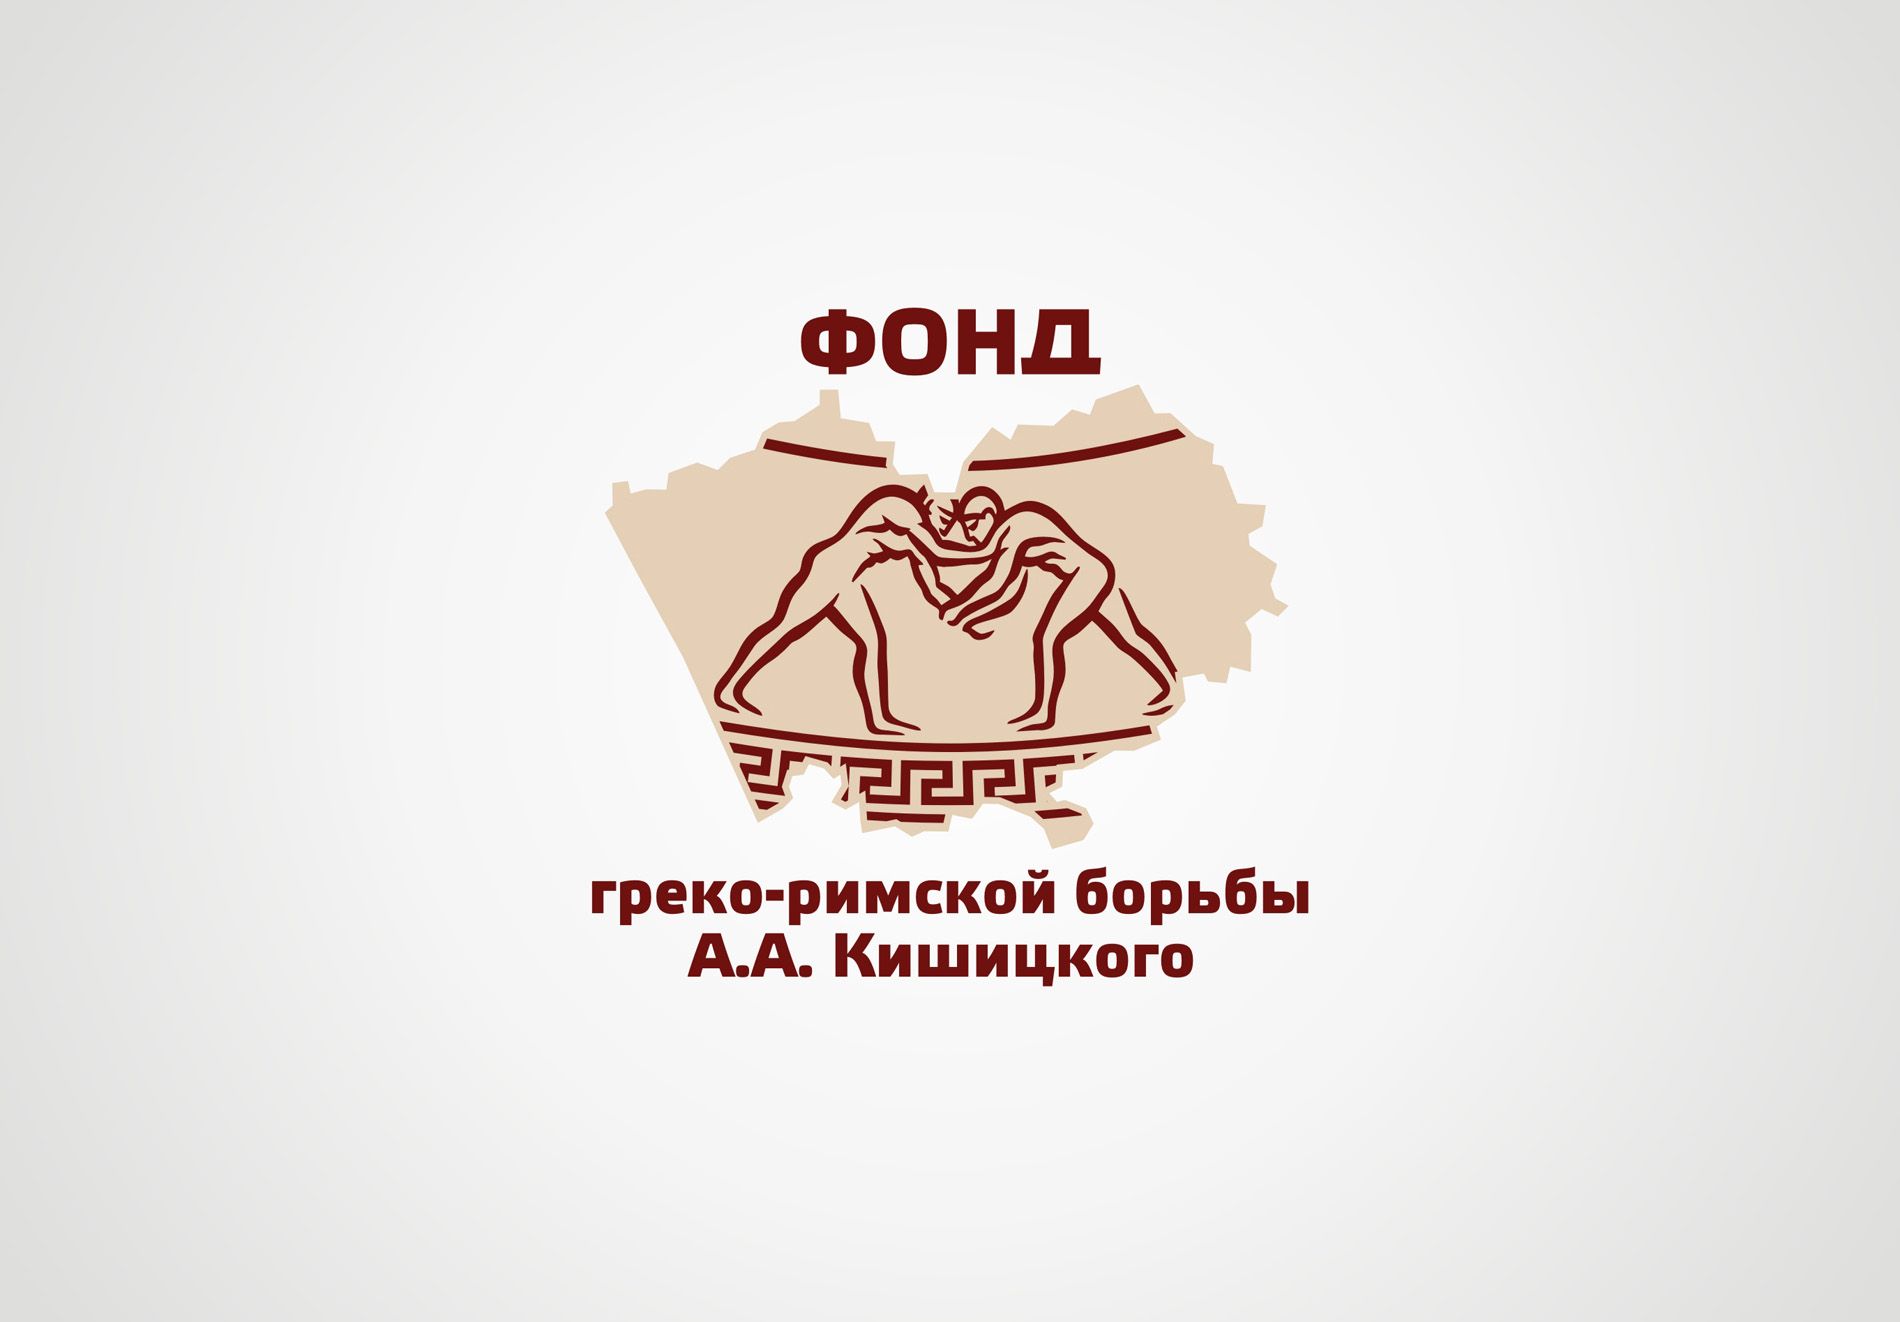 Лого и фирменный стиль для Фонд греко-римской борьбы А.А. Кишицкого - дизайнер Zheravin